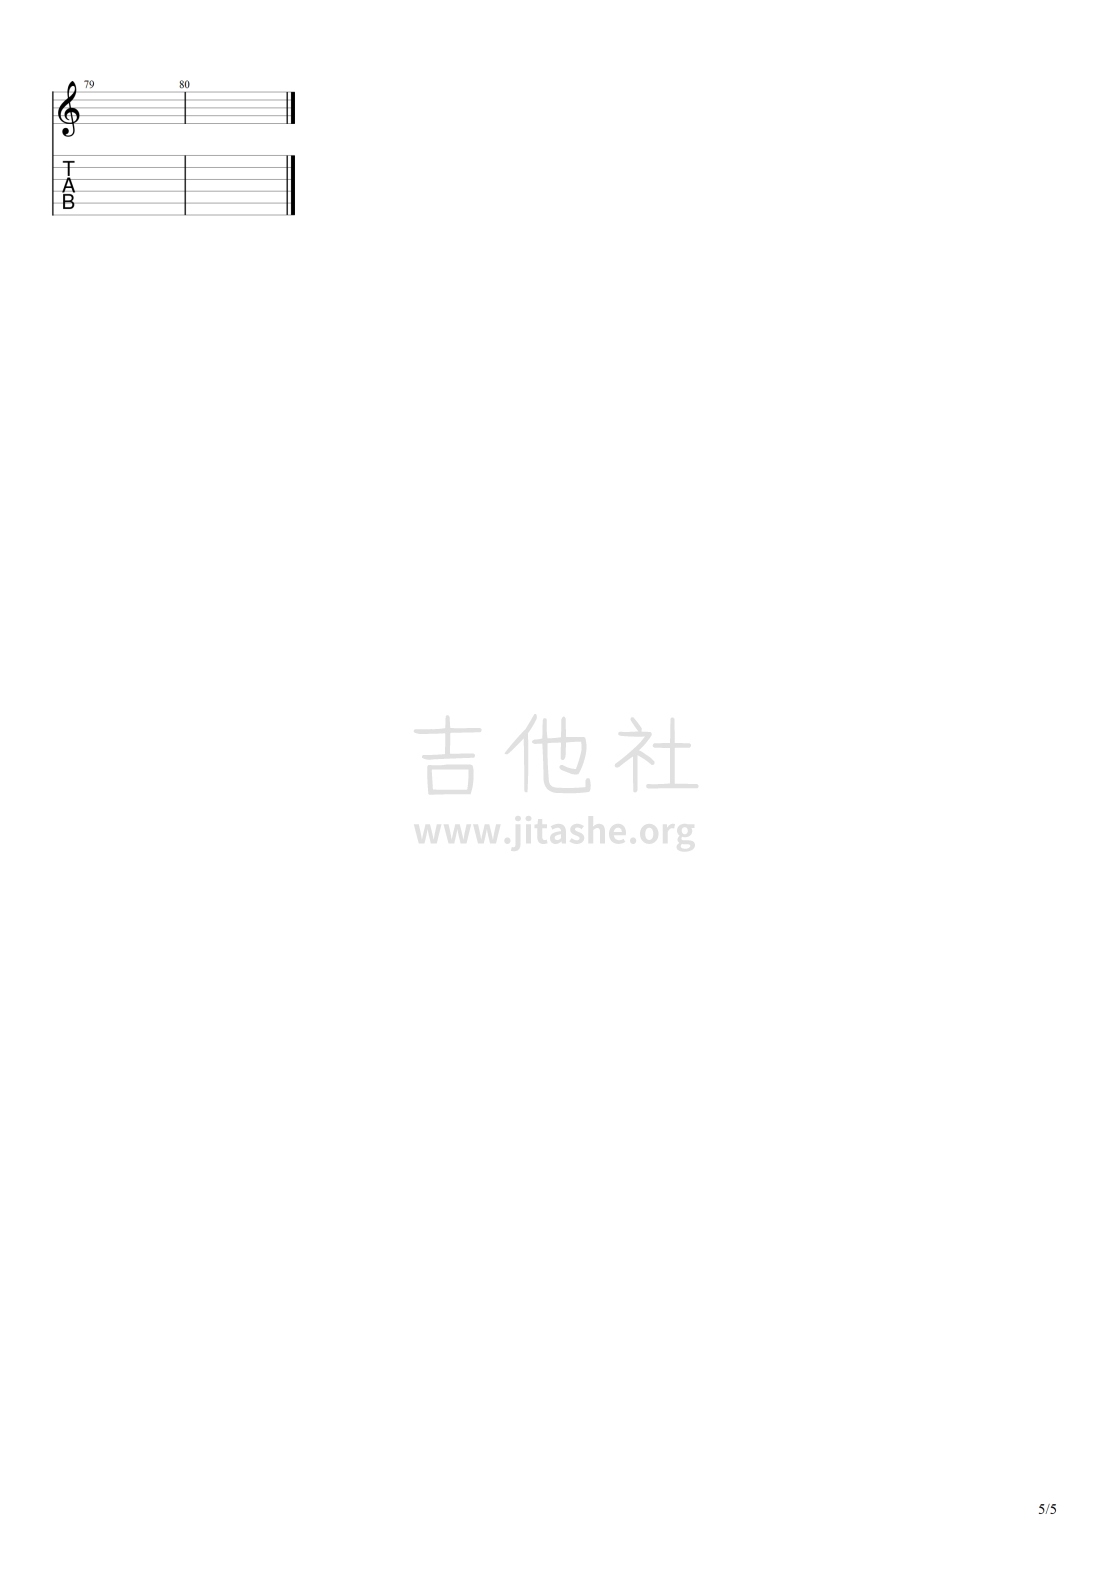 初恋吉他谱(图片谱,独奏)_回春丹(YOUNG DRUG)_初恋#5.png